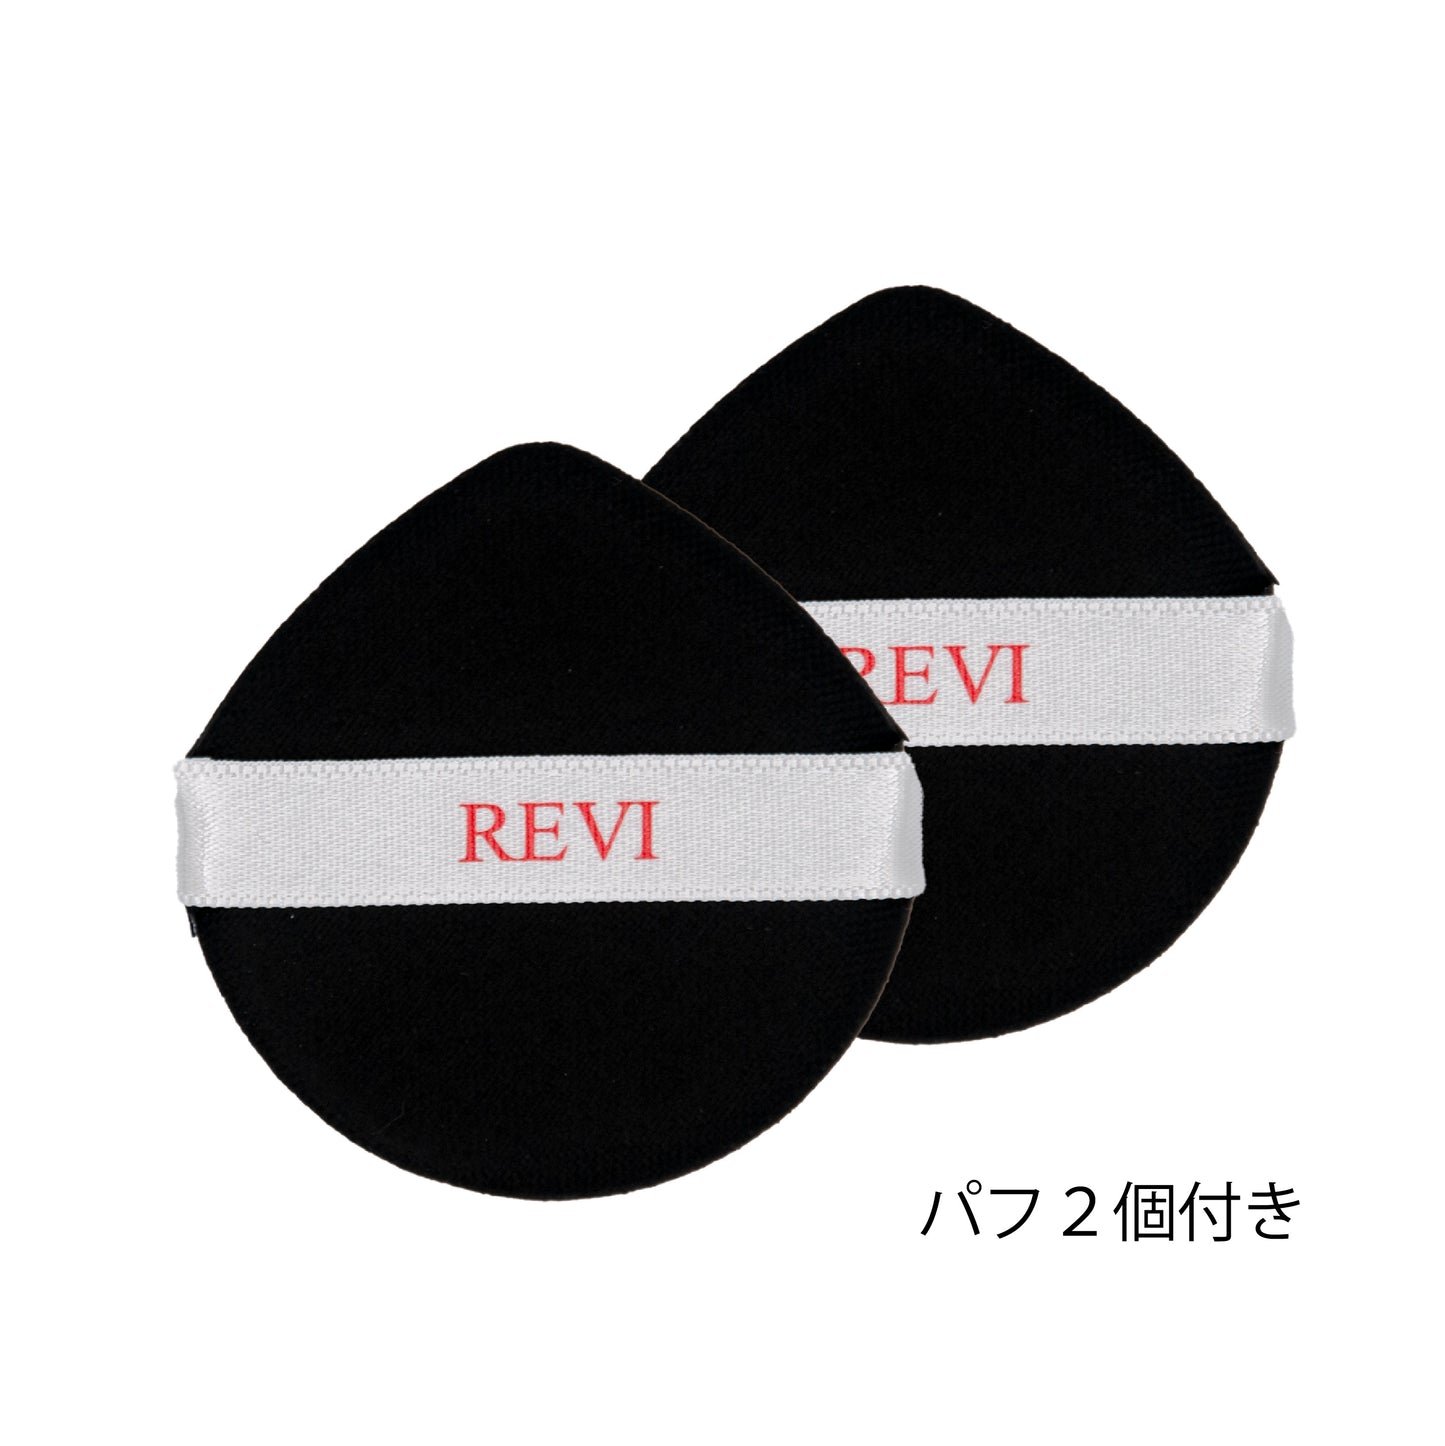 【限定】ファンデーション(15g詰め替えパフ付き)通常色Revi